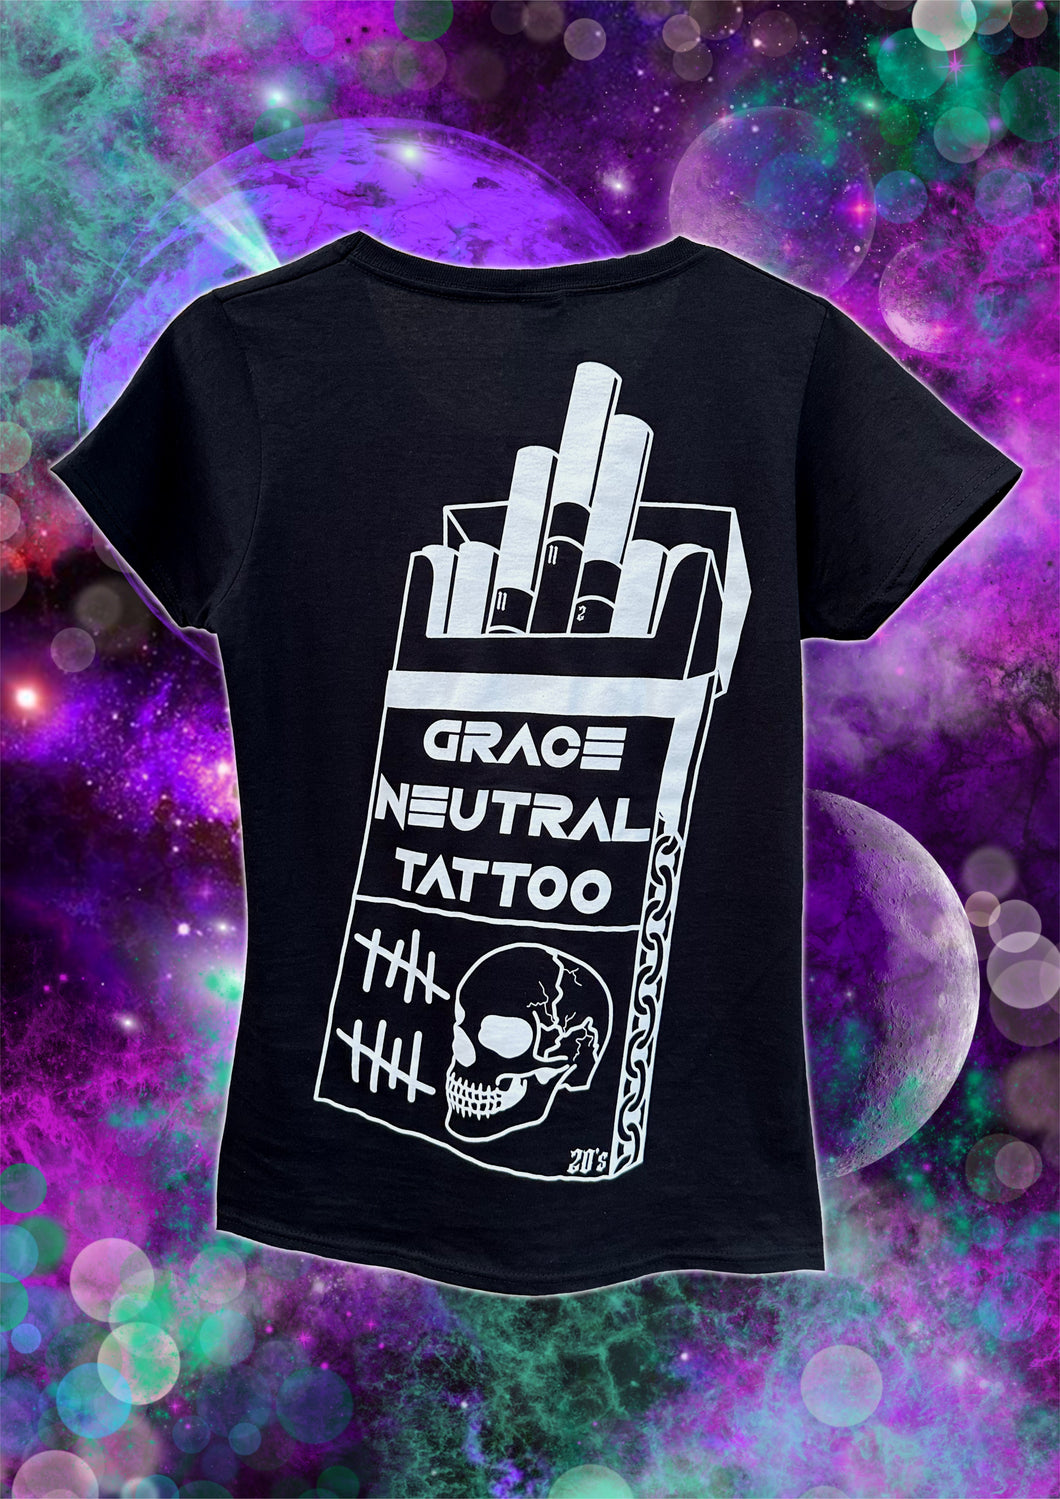 Grace Neutral T-shirt